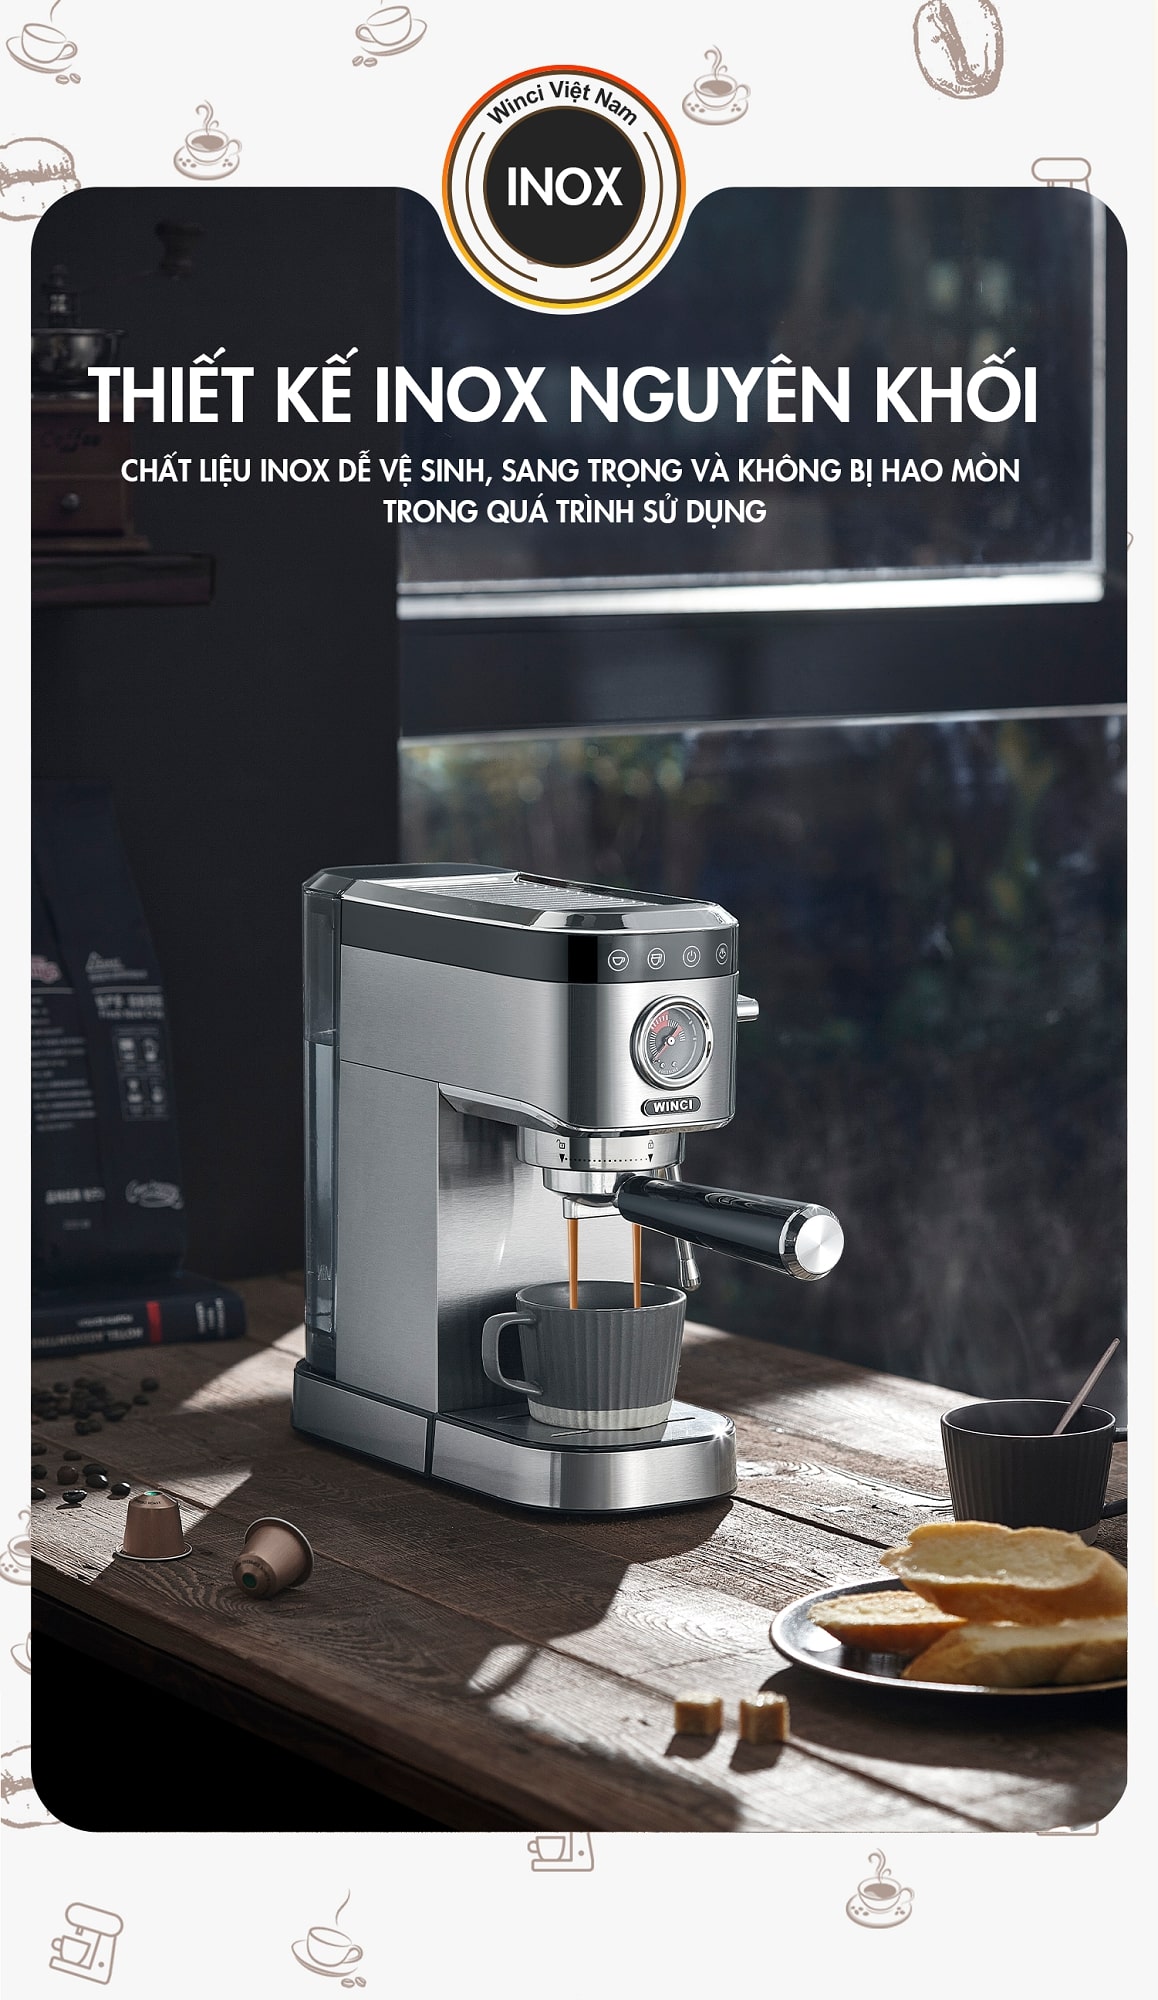 Máy pha cà phê Espresso Winci CM5100 được thiết kế bằng inox nguyên khối 